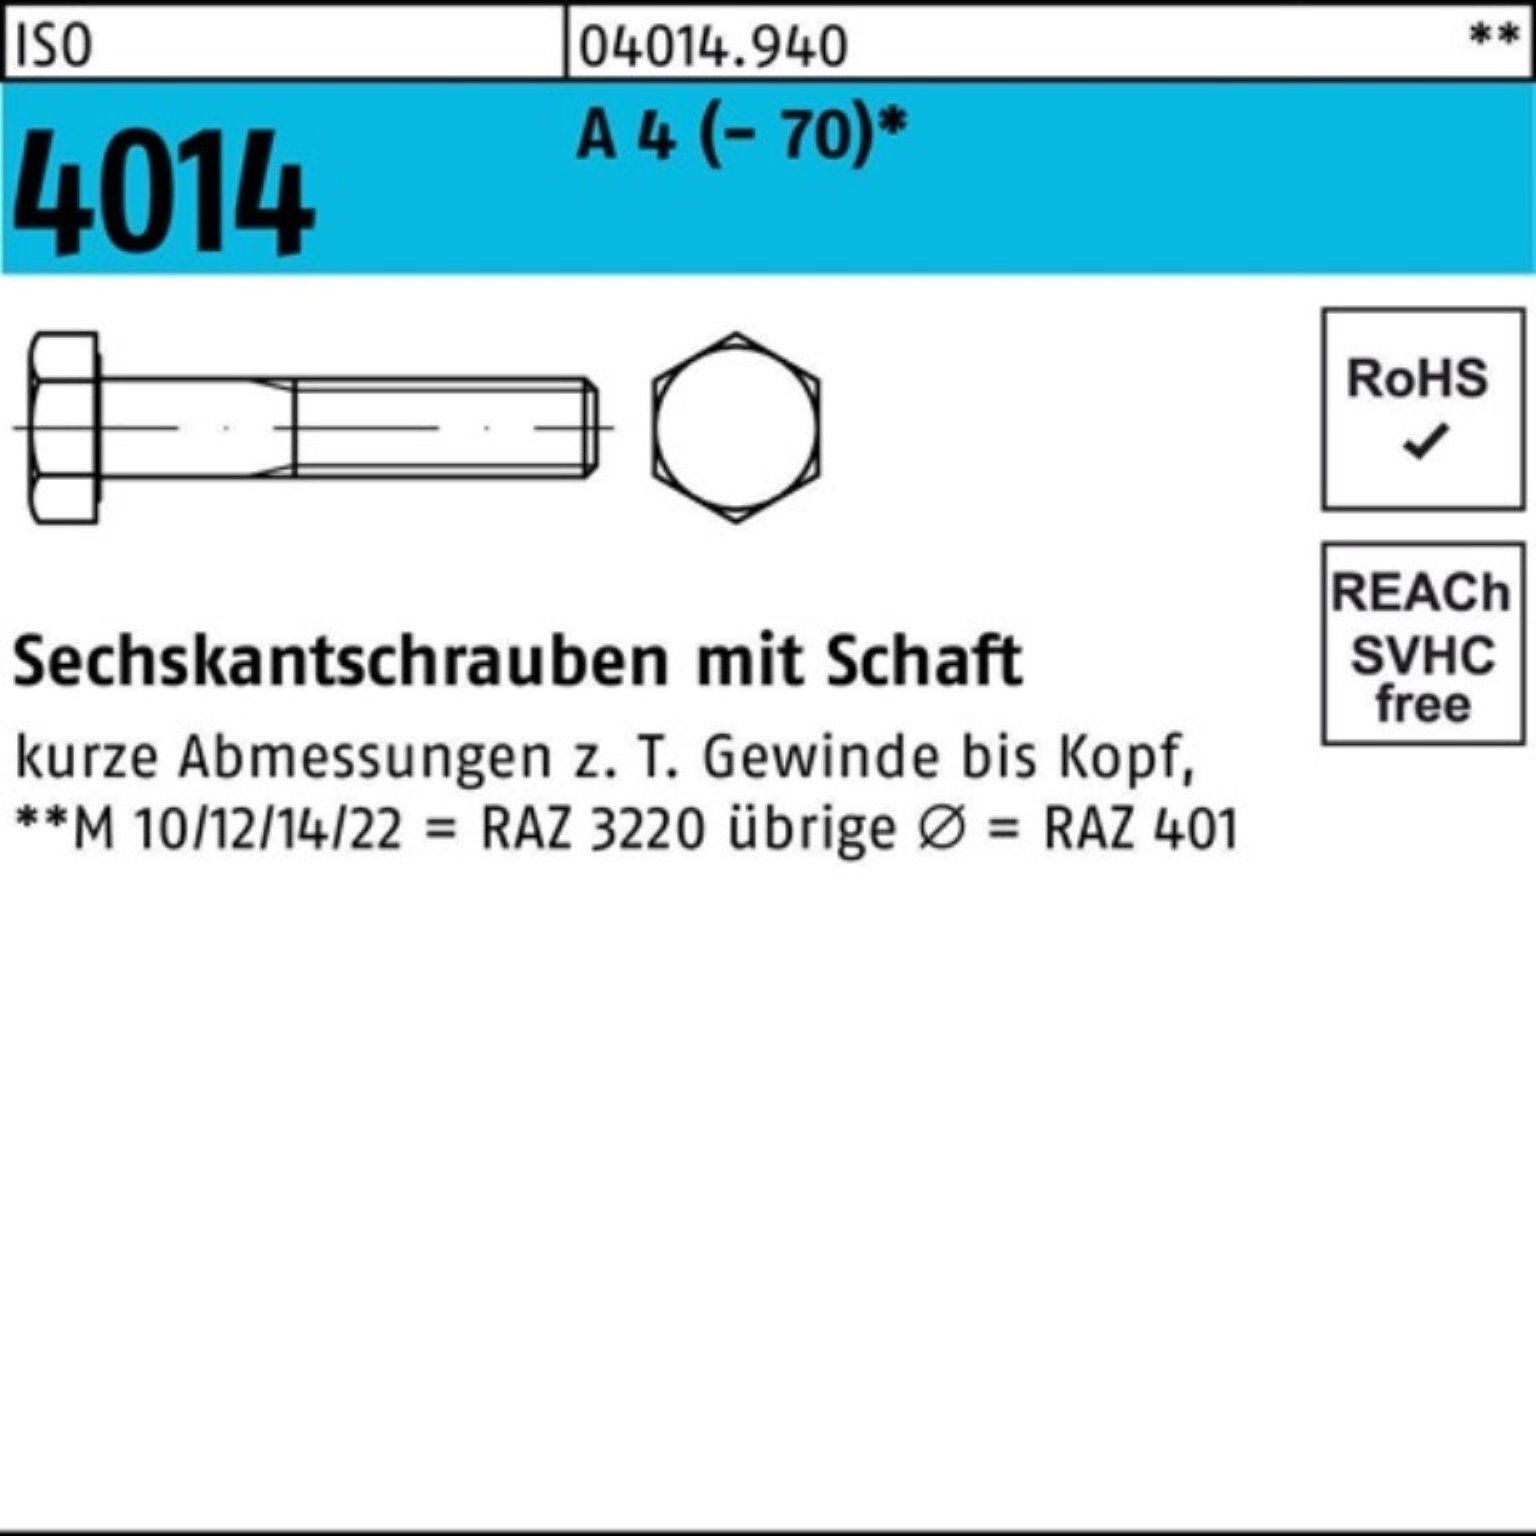 Bufab Sechskantschraube 100er Pack Schaft 1 4014 210 (70) A 4 St Sechskantschraube M12x ISO